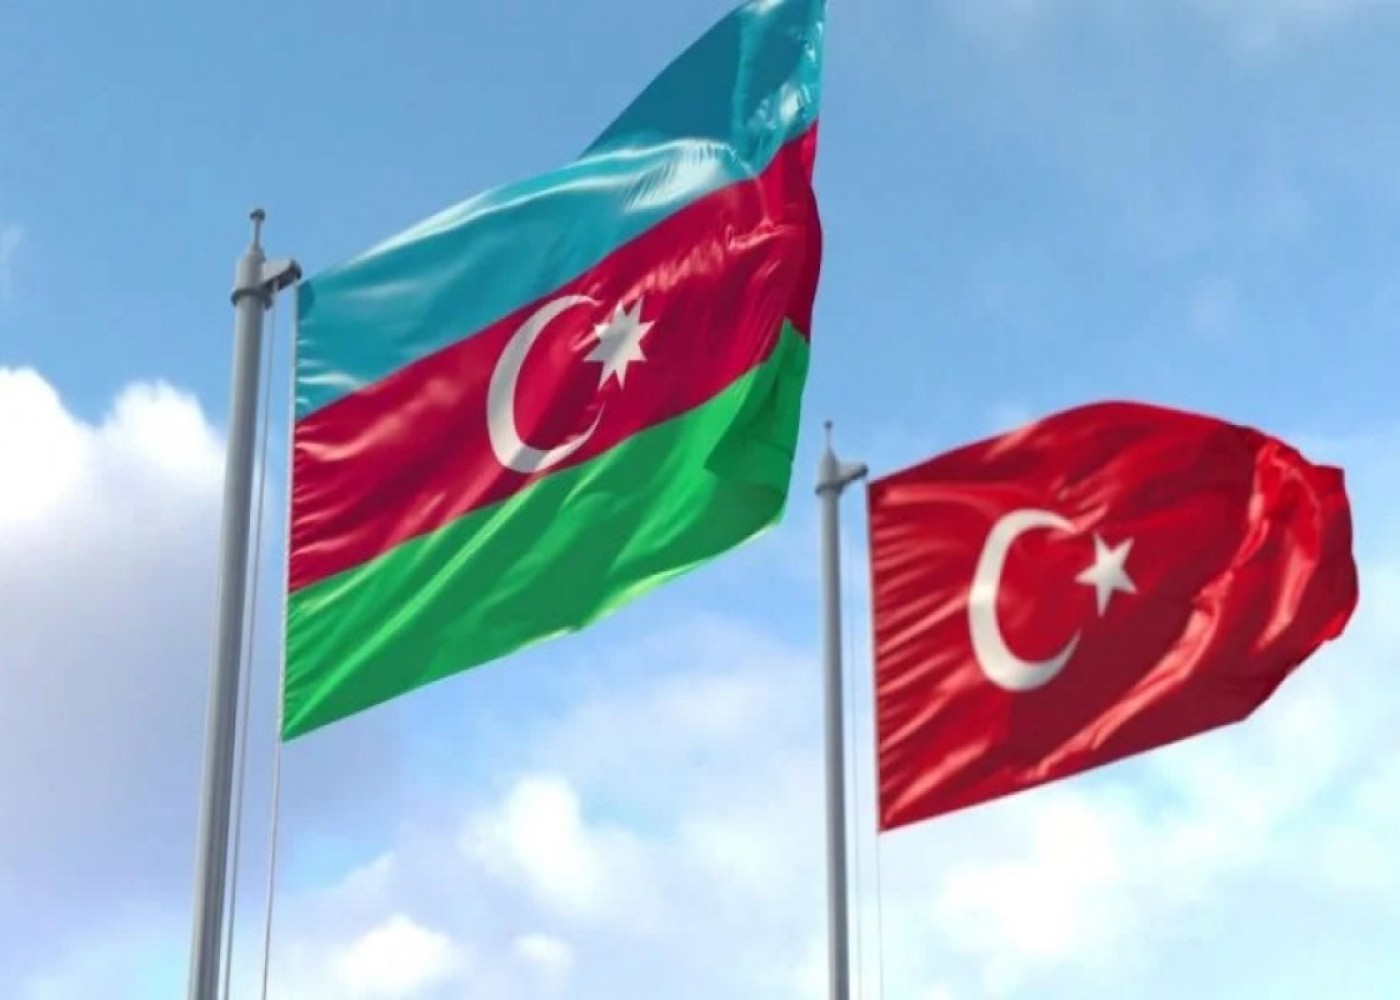 Azərbaycanla Türkiyə arasında ikiqat vergitutma aradan qaldırılıb